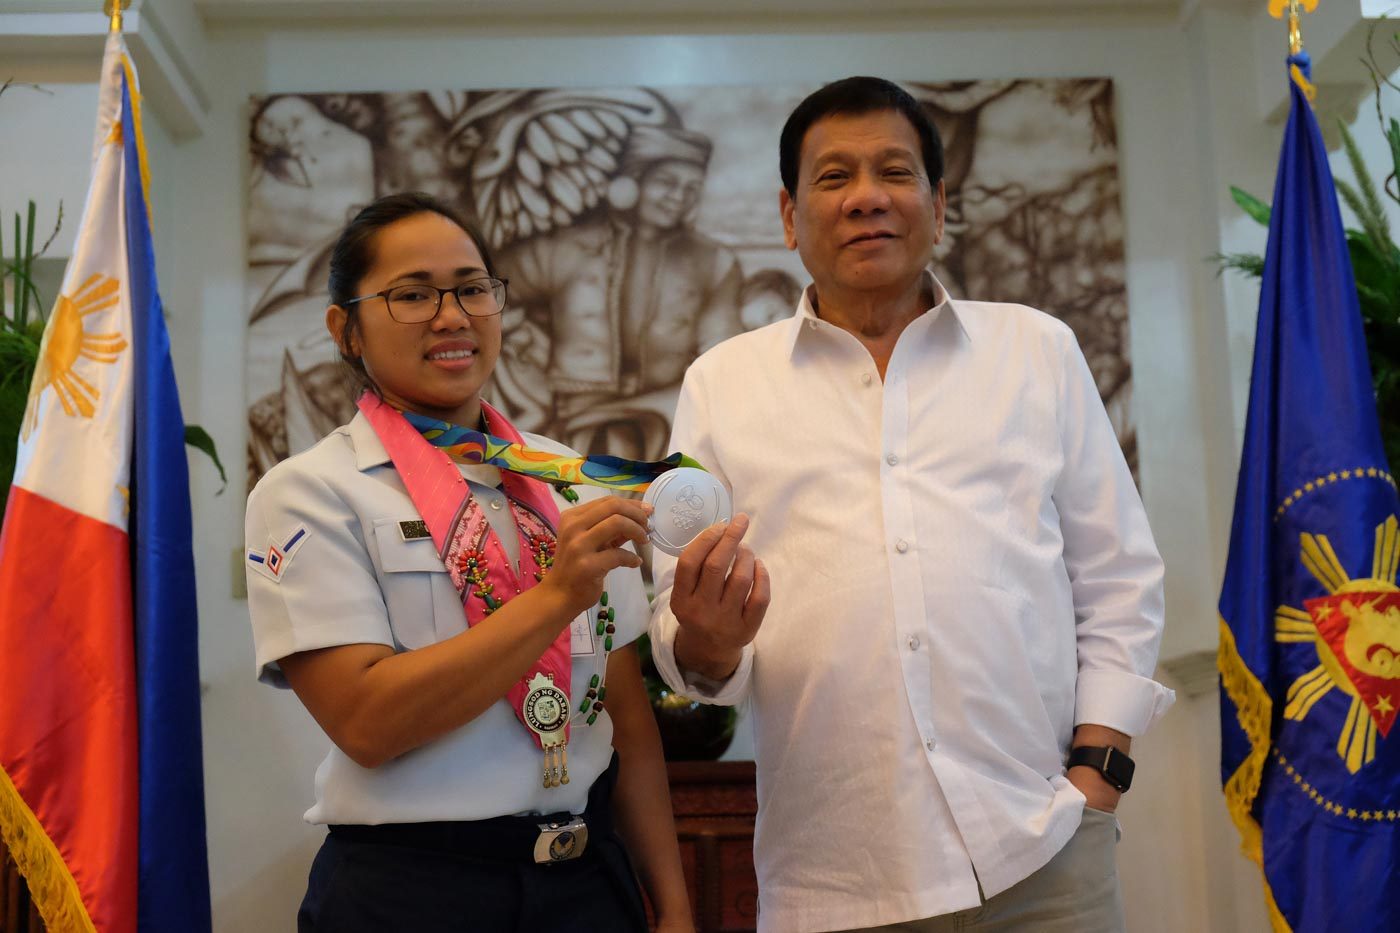 IN PHOTOS: Medalist Hidilyn Diaz meets President Duterte